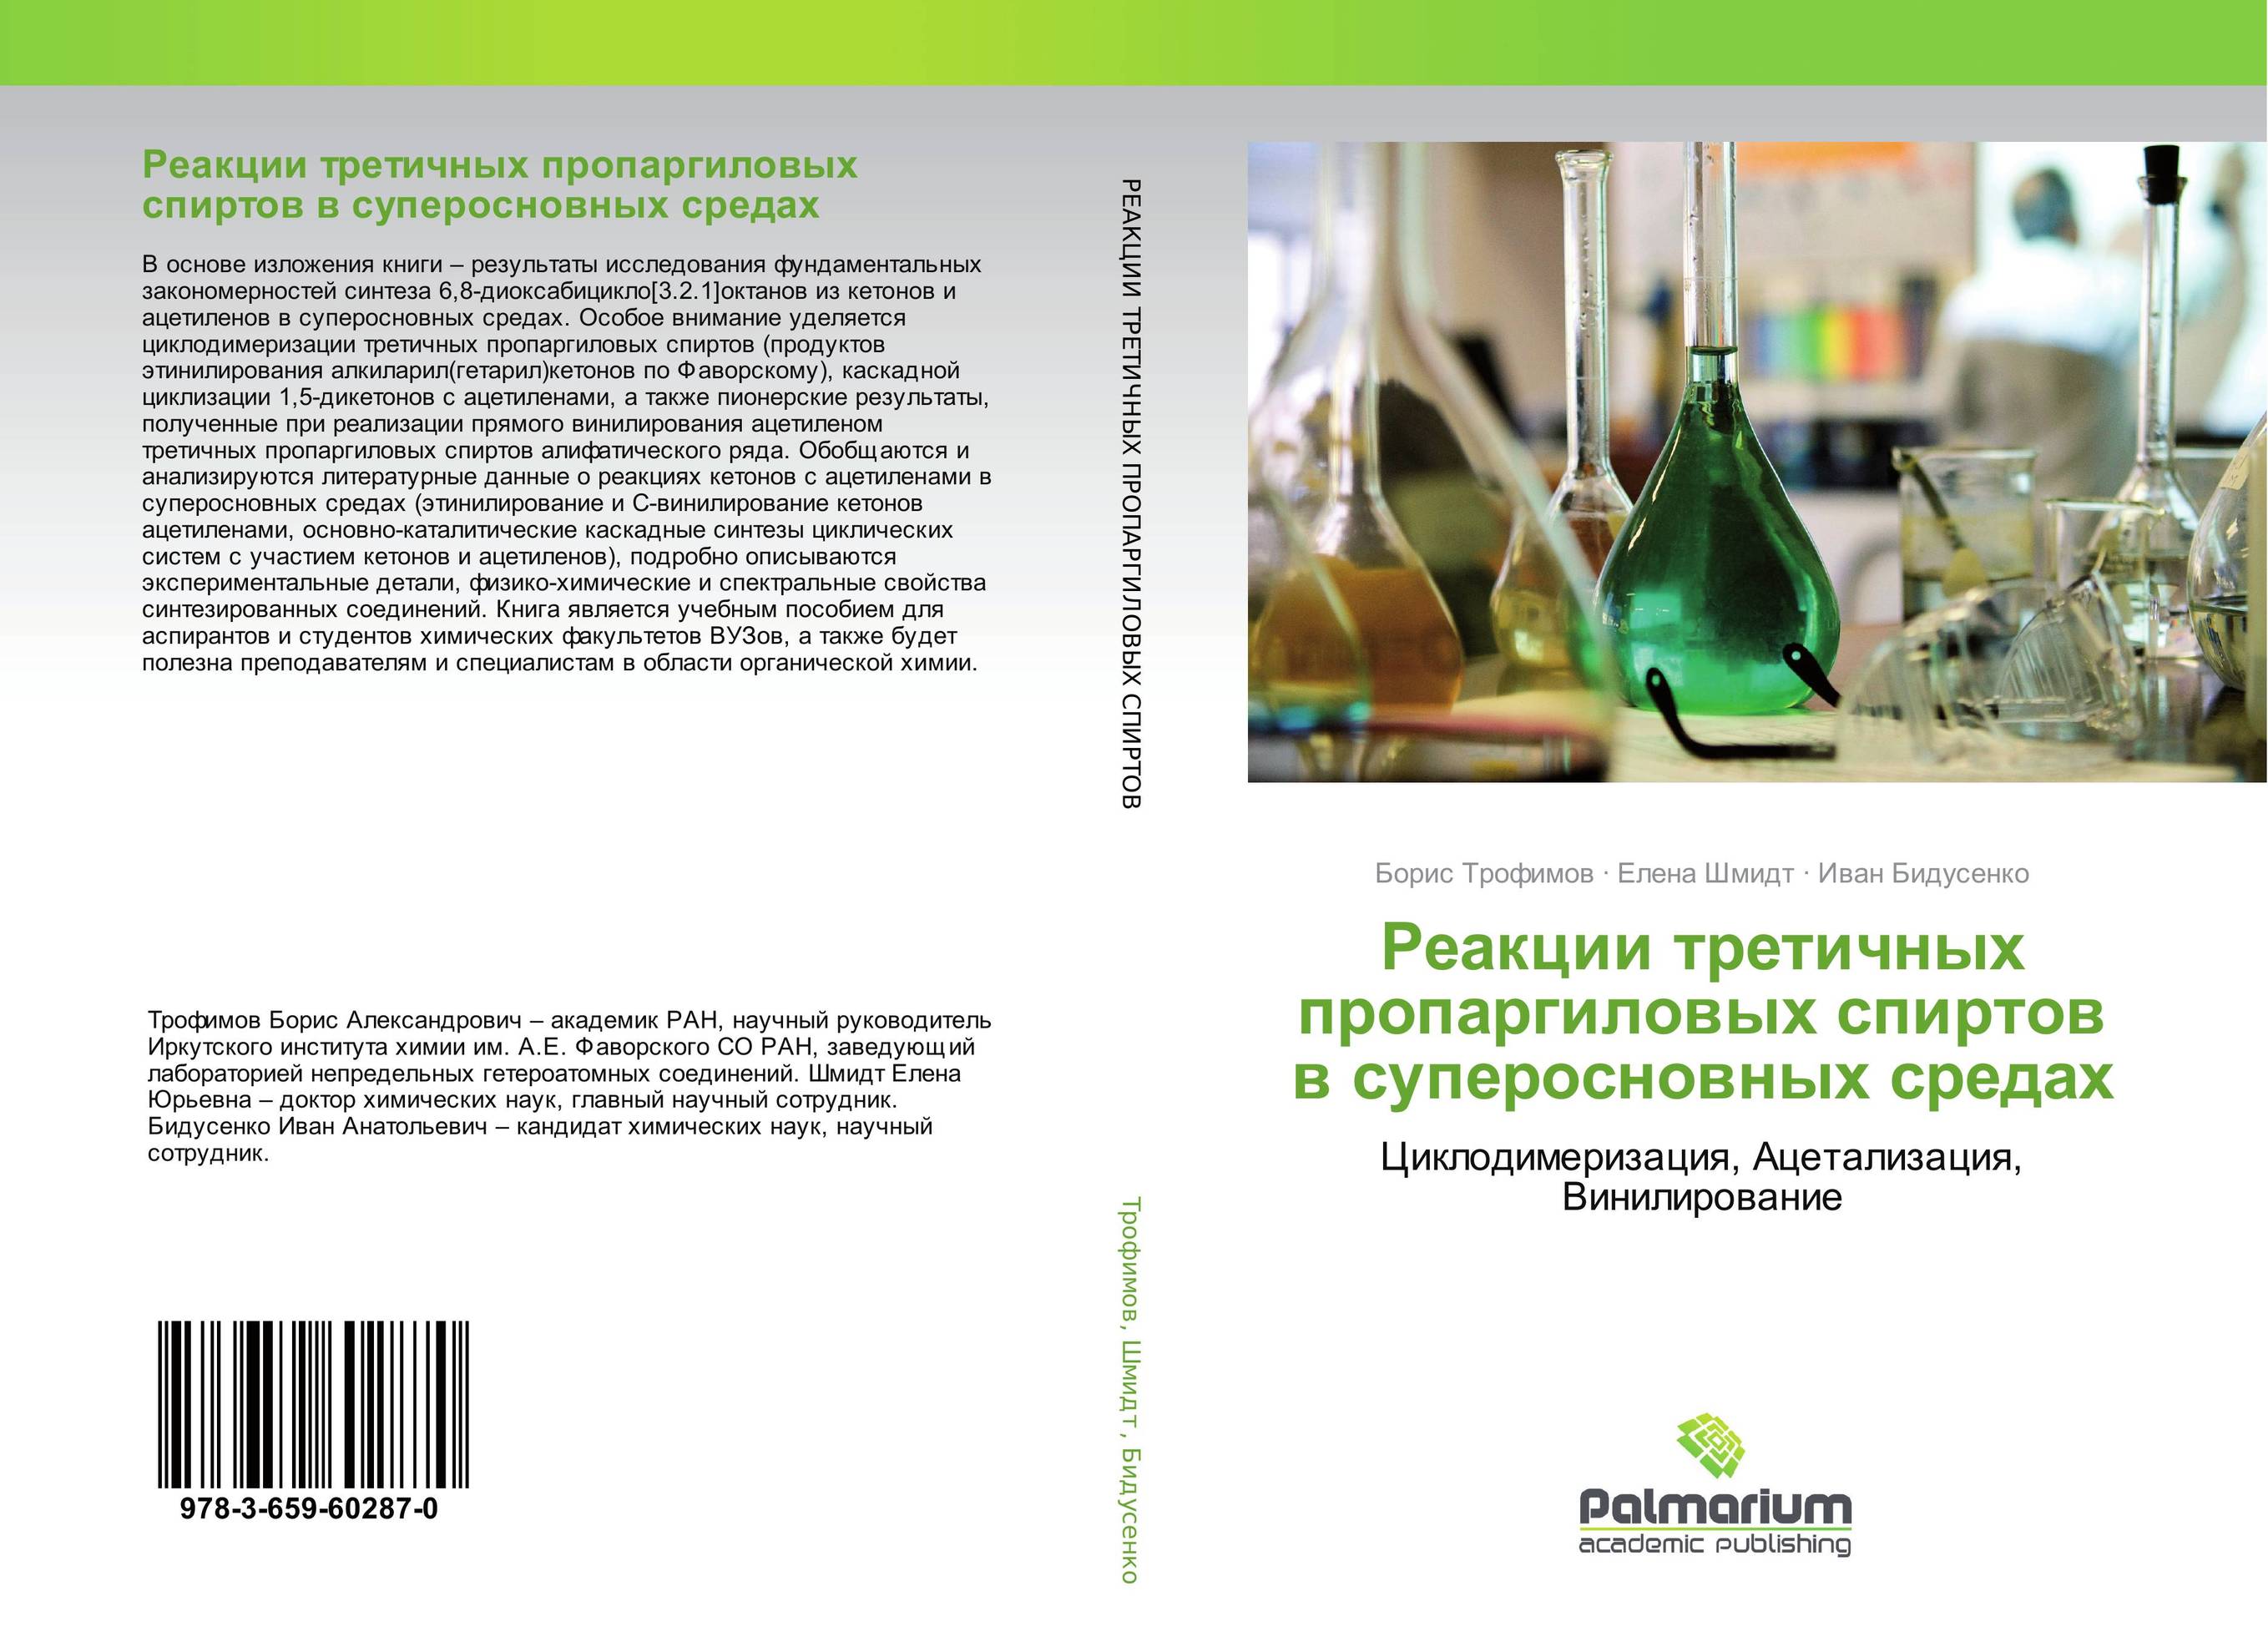 
        Реакции третичных пропаргиловых спиртов в суперосновных средах. Циклодимеризация, Ацетализация, Винилирование.
      